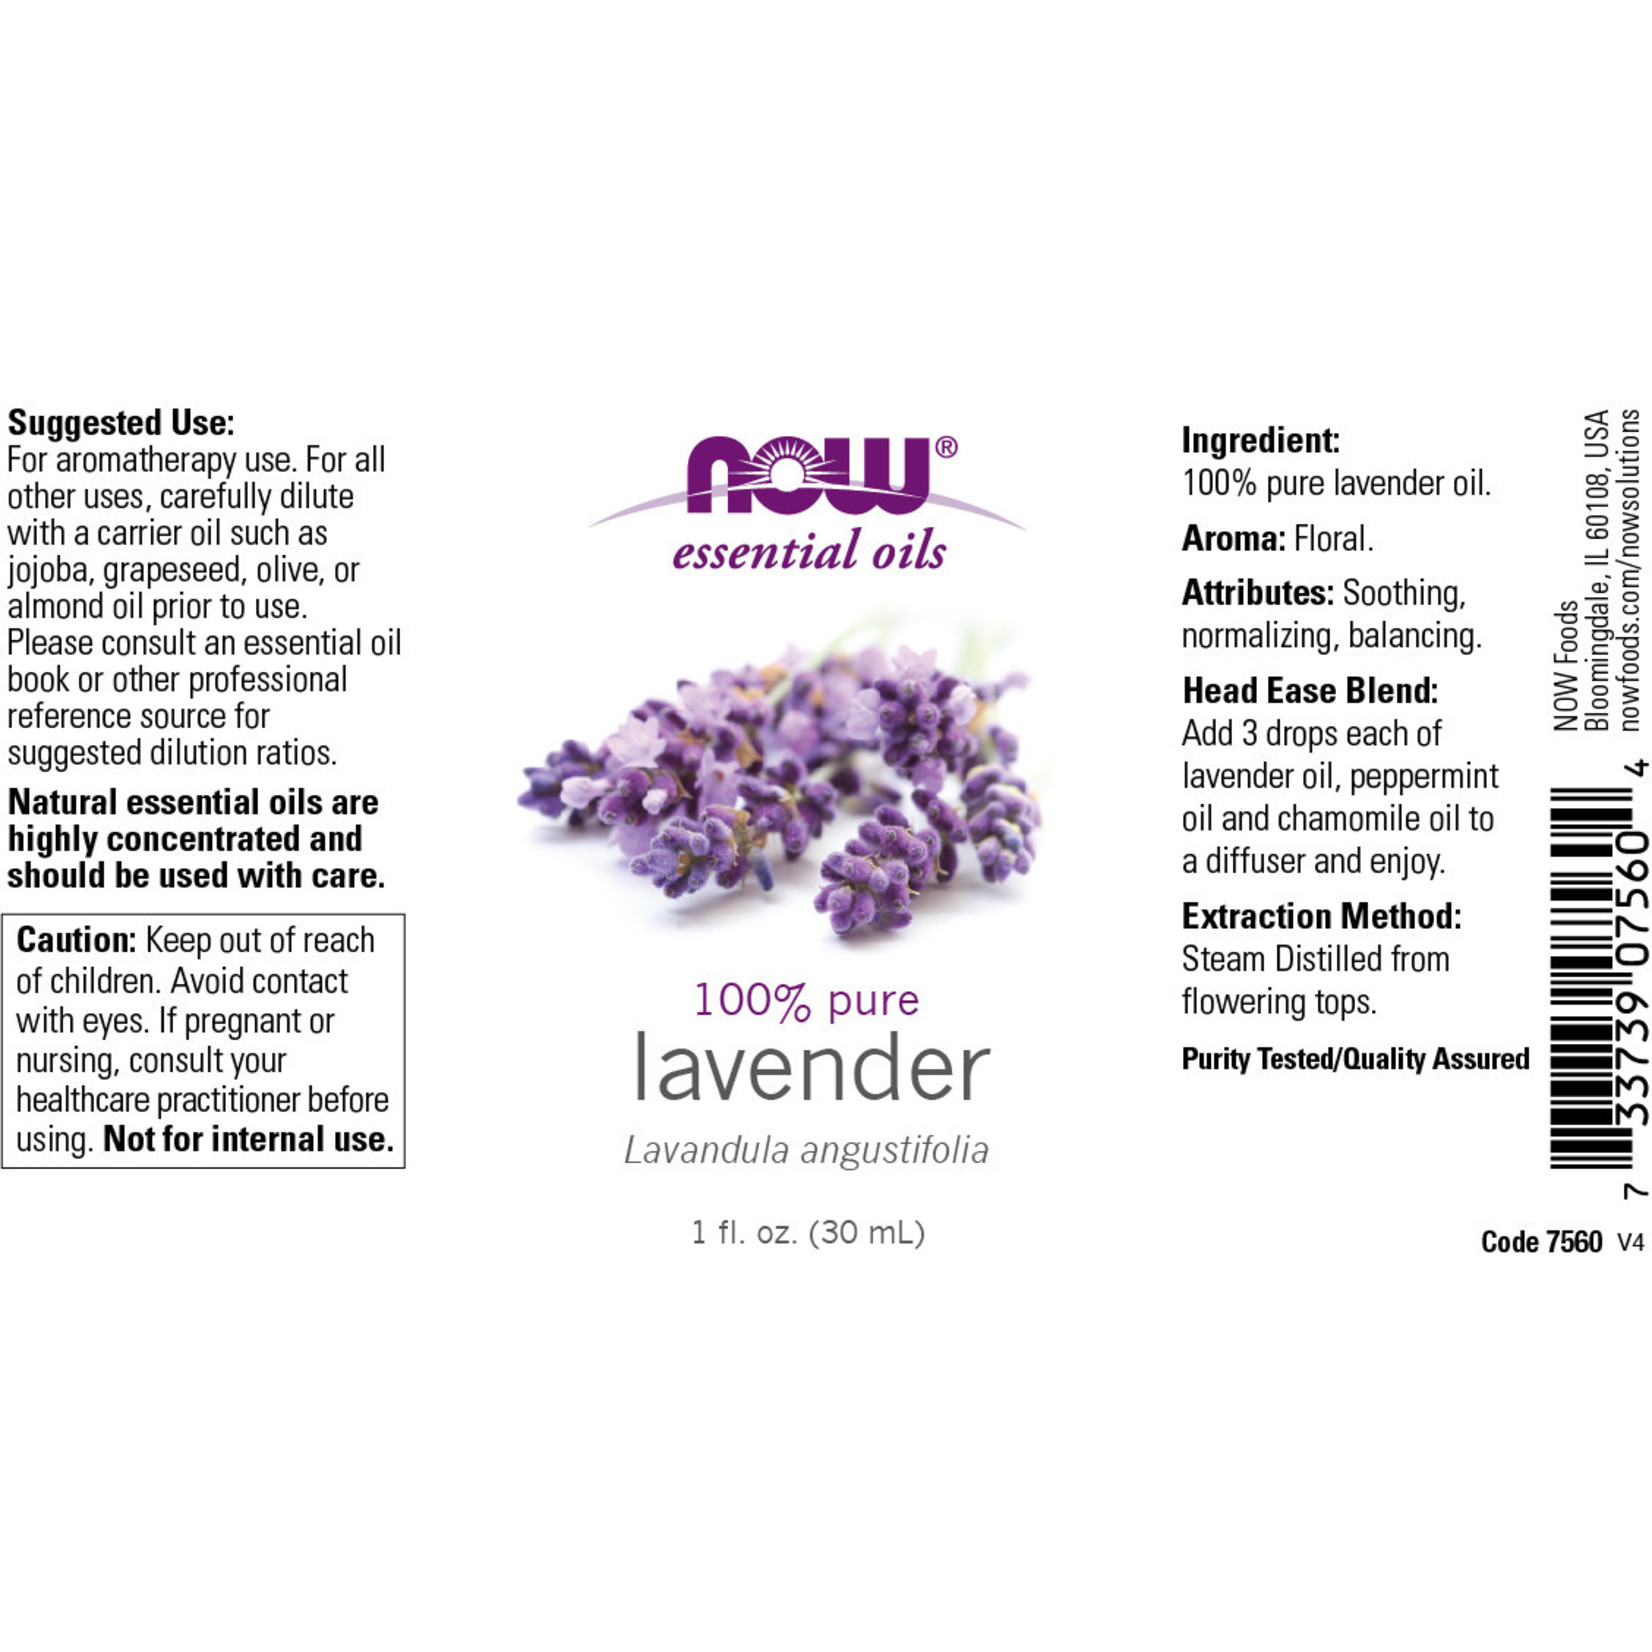 Now Now - Lavender - 1 oz